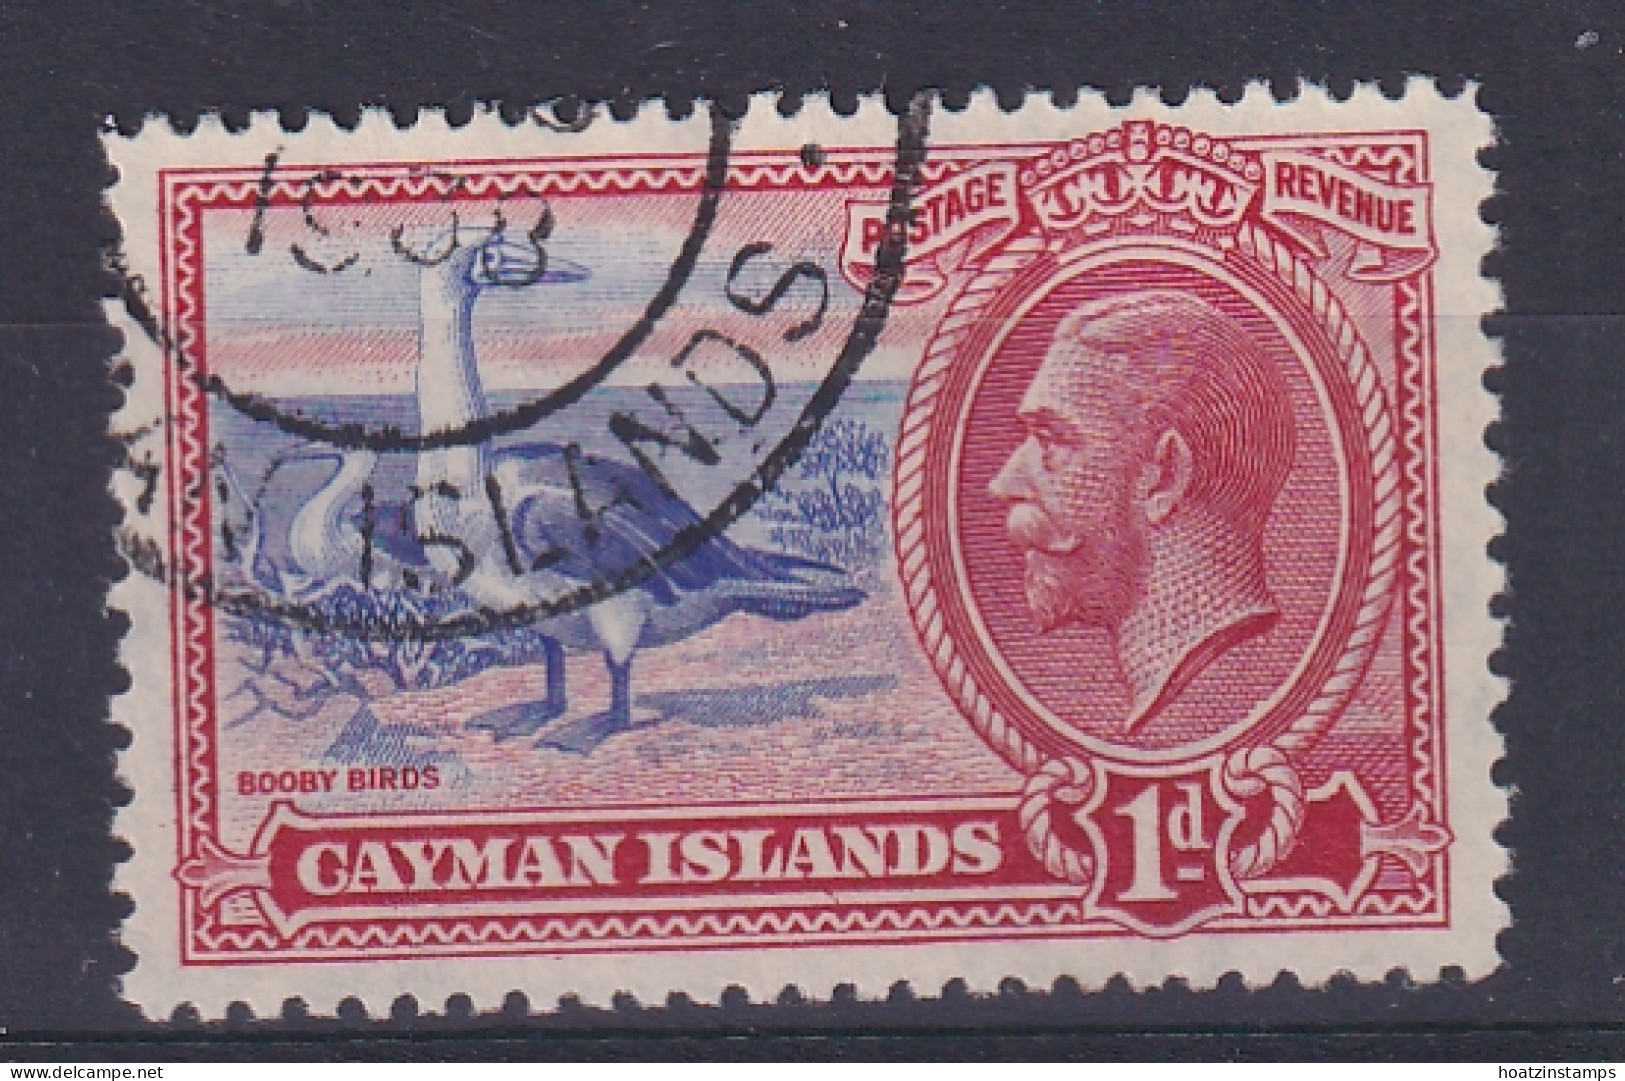 Cayman Islands: 1935   KGV - Pictorial   SG98   1d     Used - Caimán (Islas)